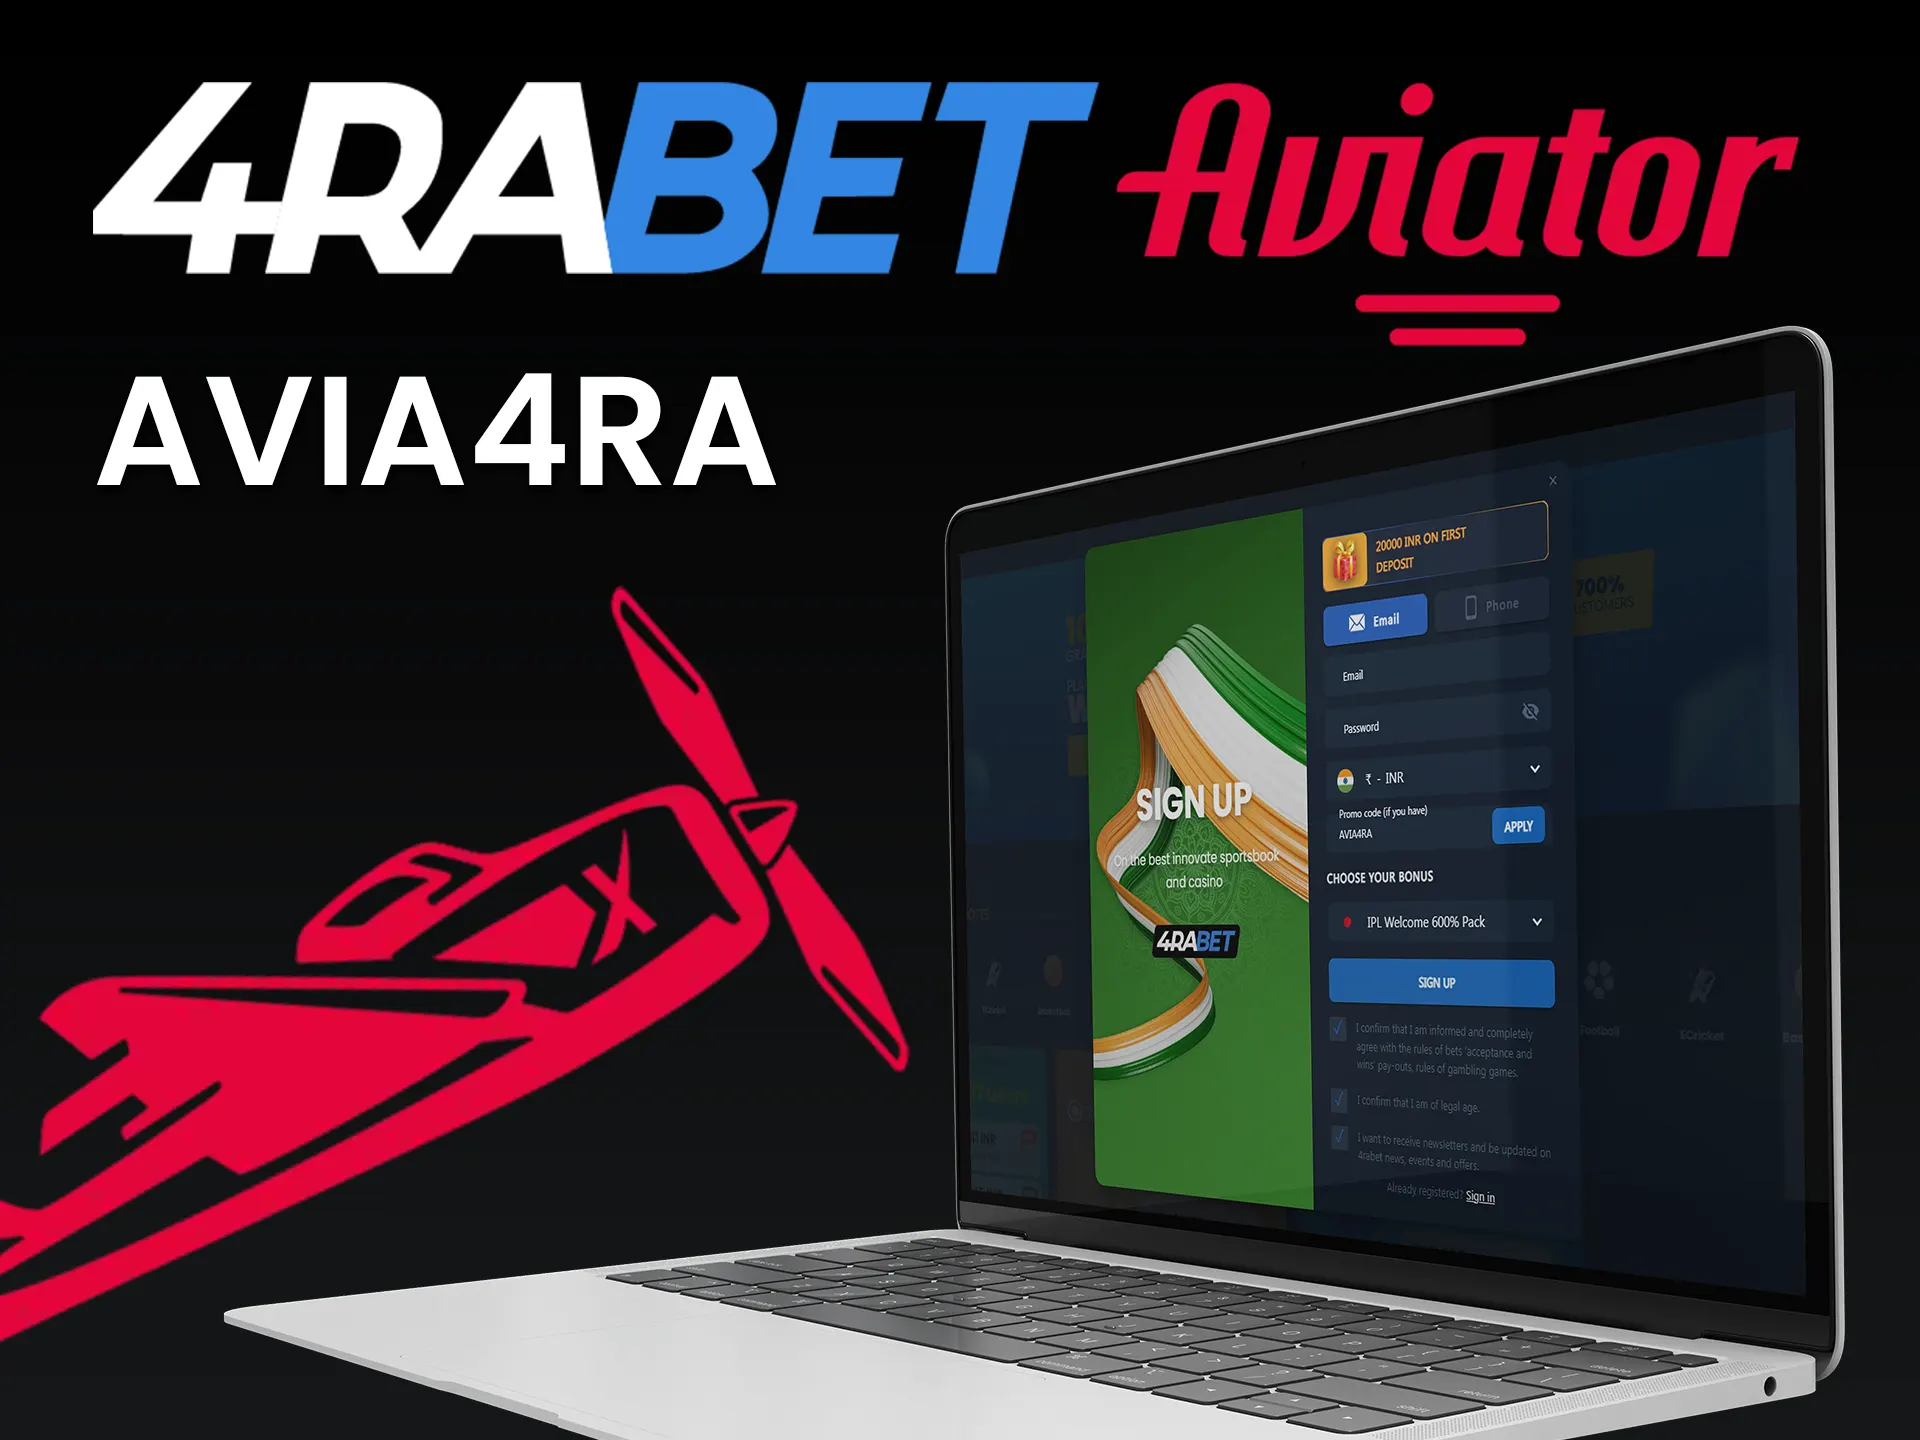 Use o código promocional da 4rabet para jogar Aviator.